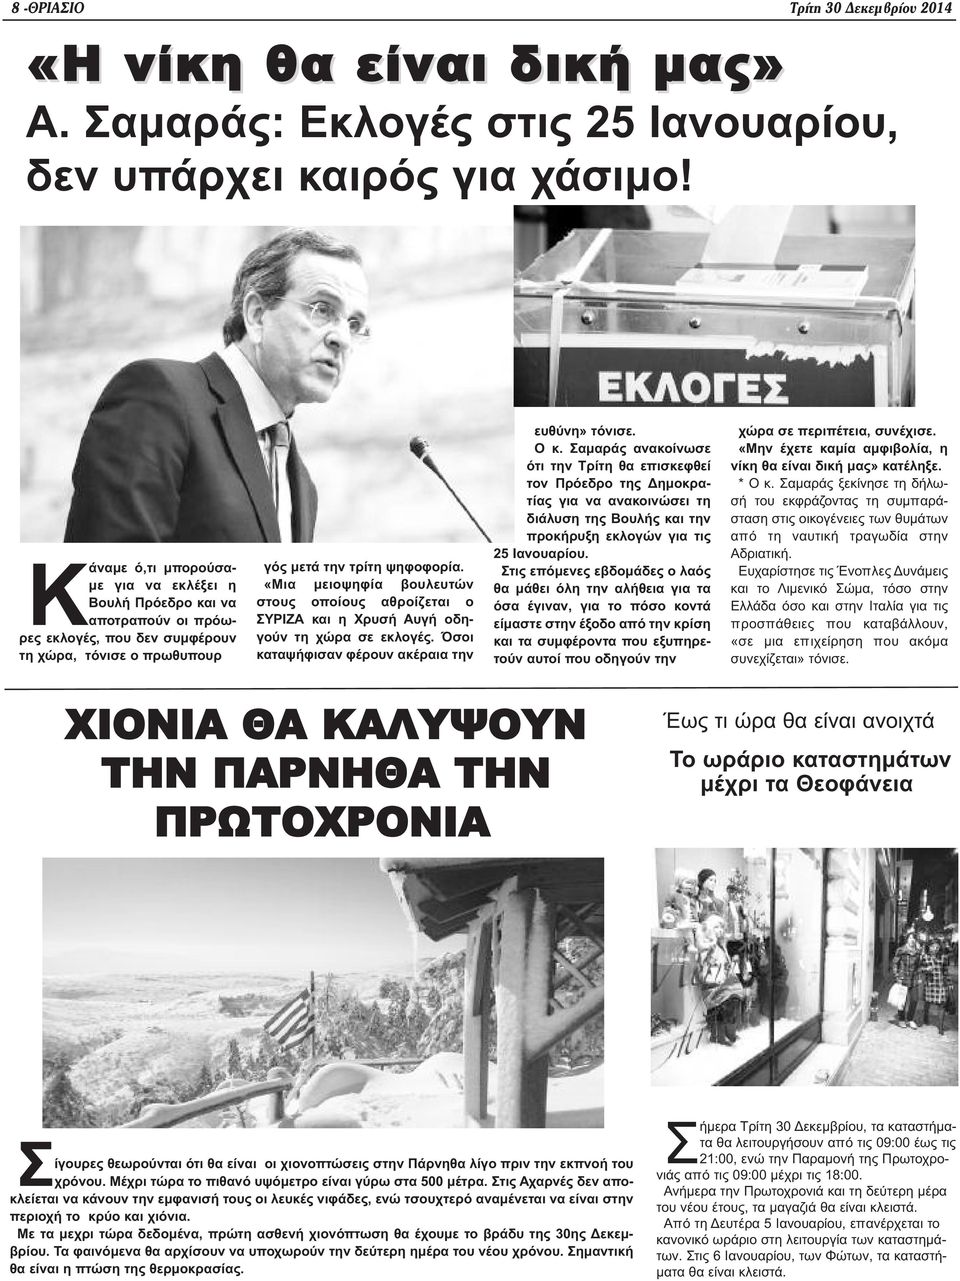 «Μια μειοψηφία βουλευτών στους οποίους αθροίζεται ο ΣΥΡΙΖΑ και η Χρυσή Αυγή οδηγούν τη χώρα σε εκλογές. Όσοι καταψήφισαν φέρουν ακέραια την ευθύνη» τόνισε. Ο κ.